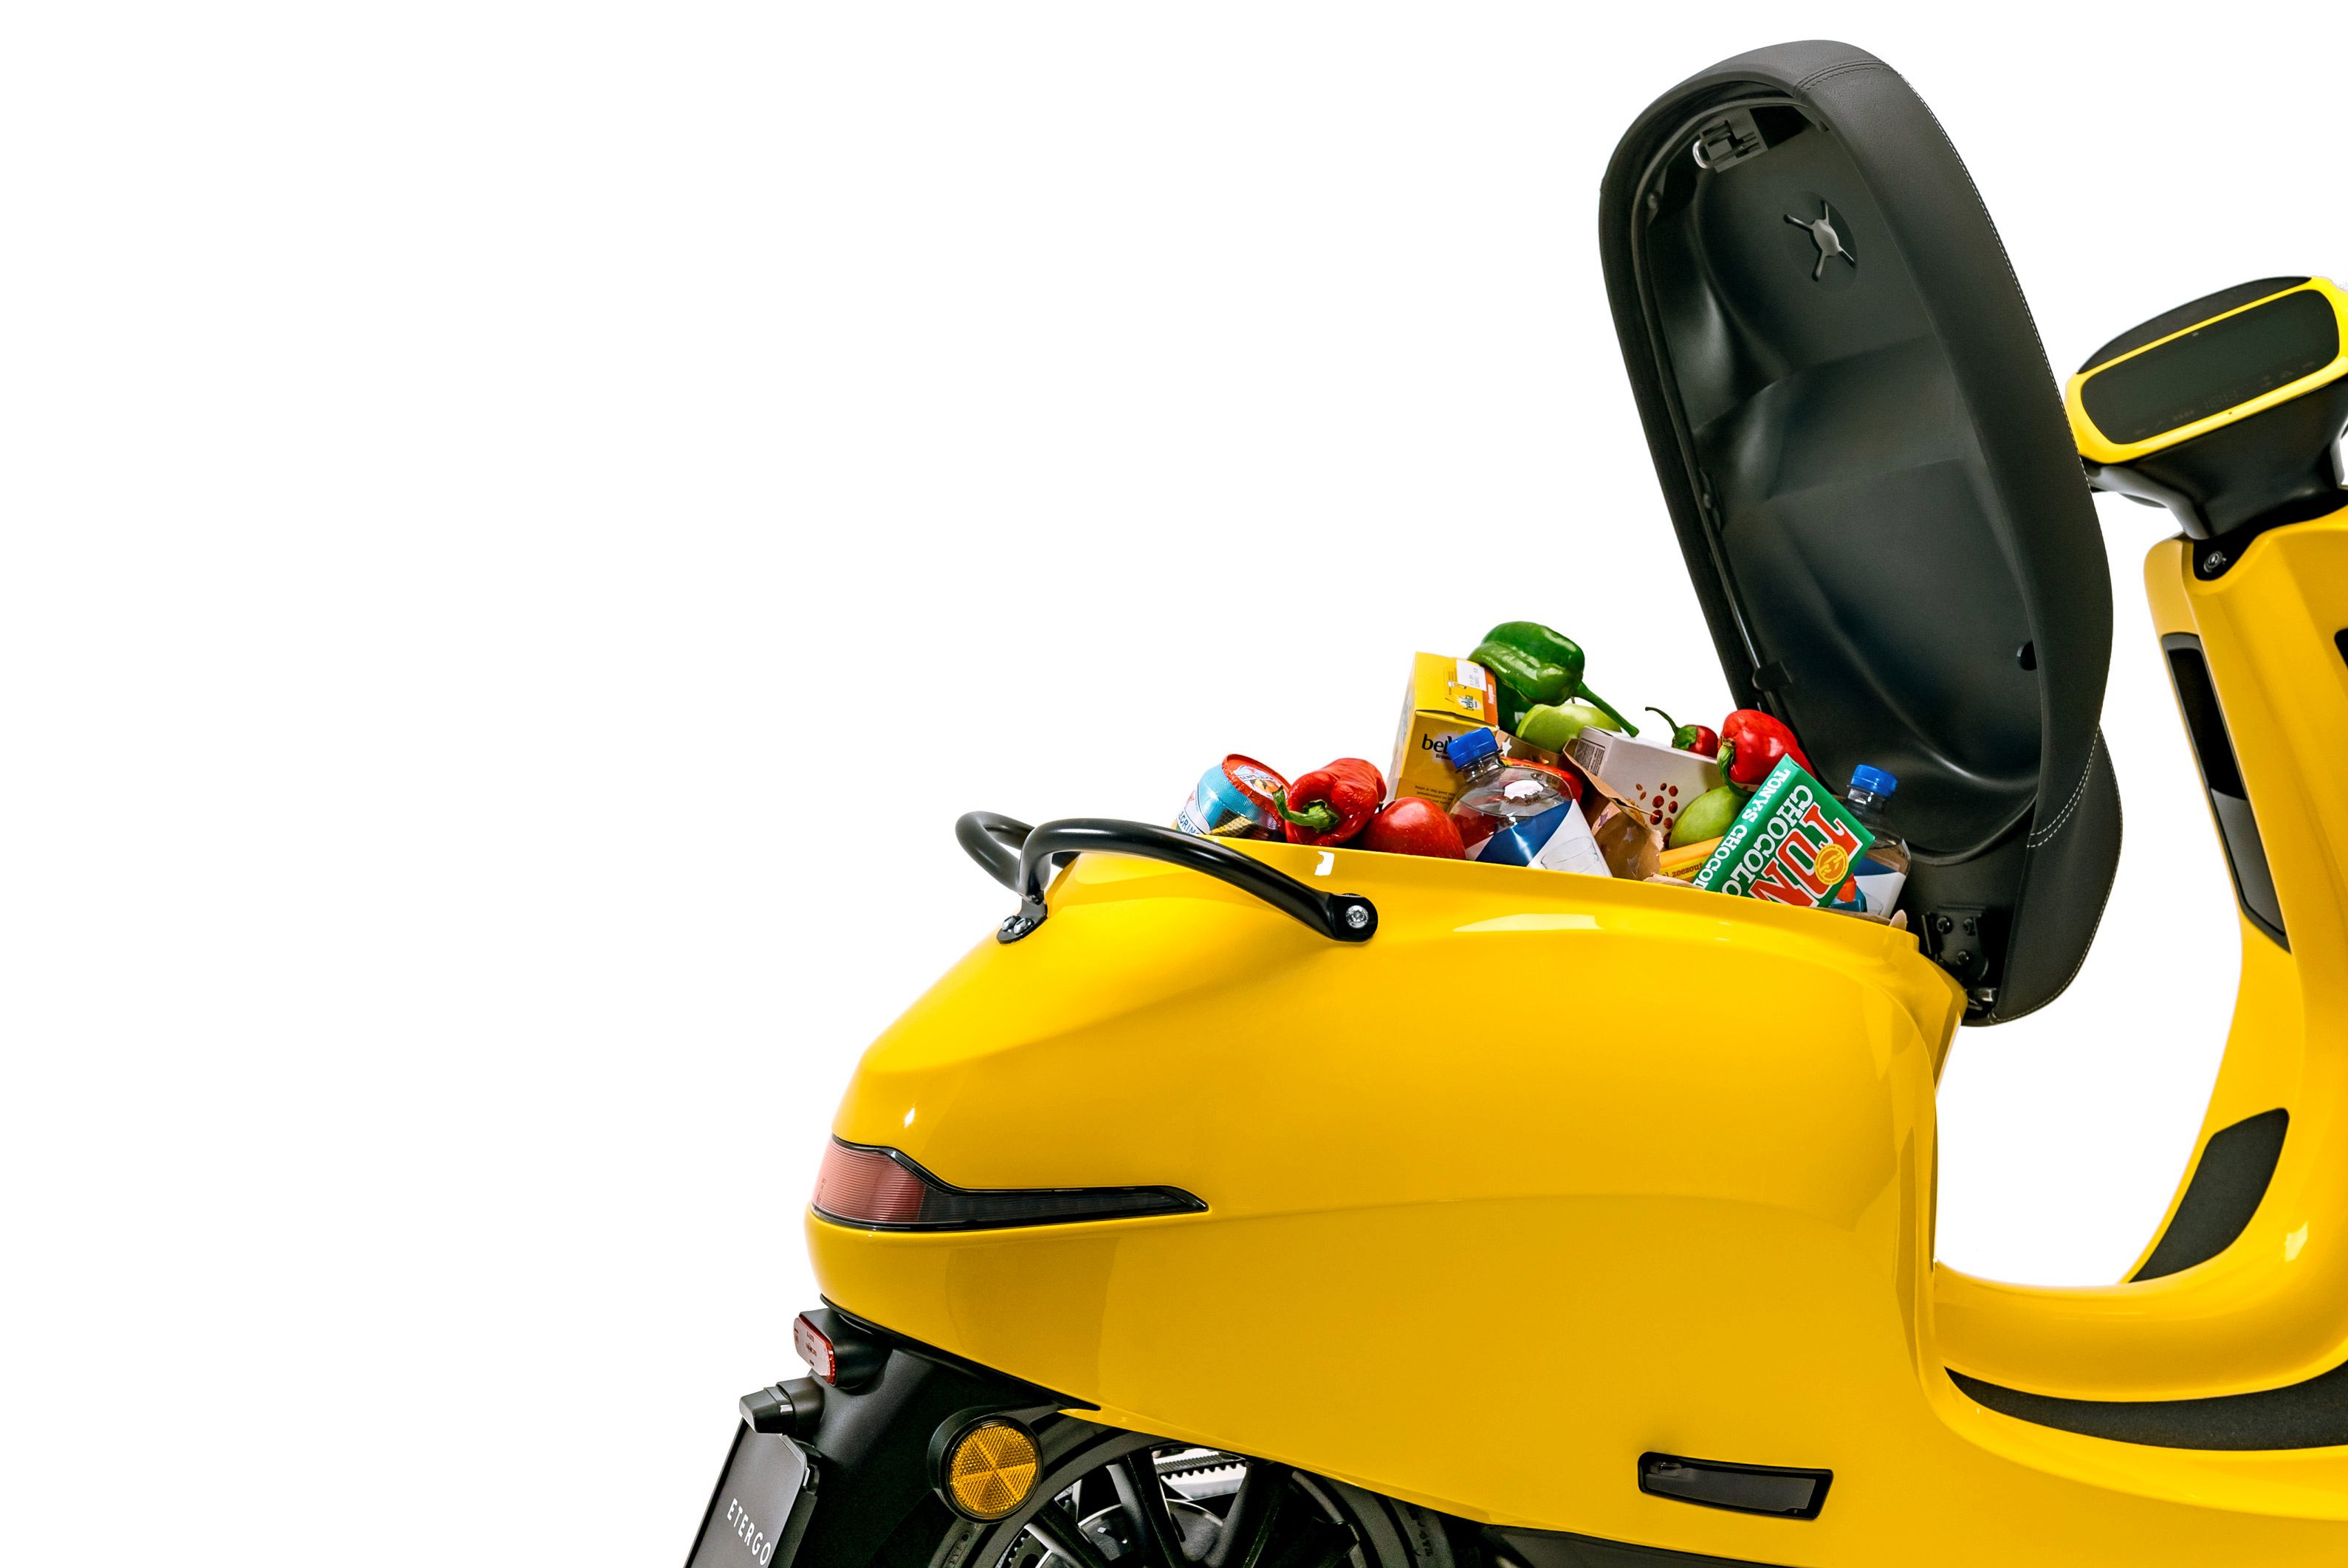 Etergo, 240 km menzilli elektrikli scooter'ı için 10 milyon euro yatırım aldı